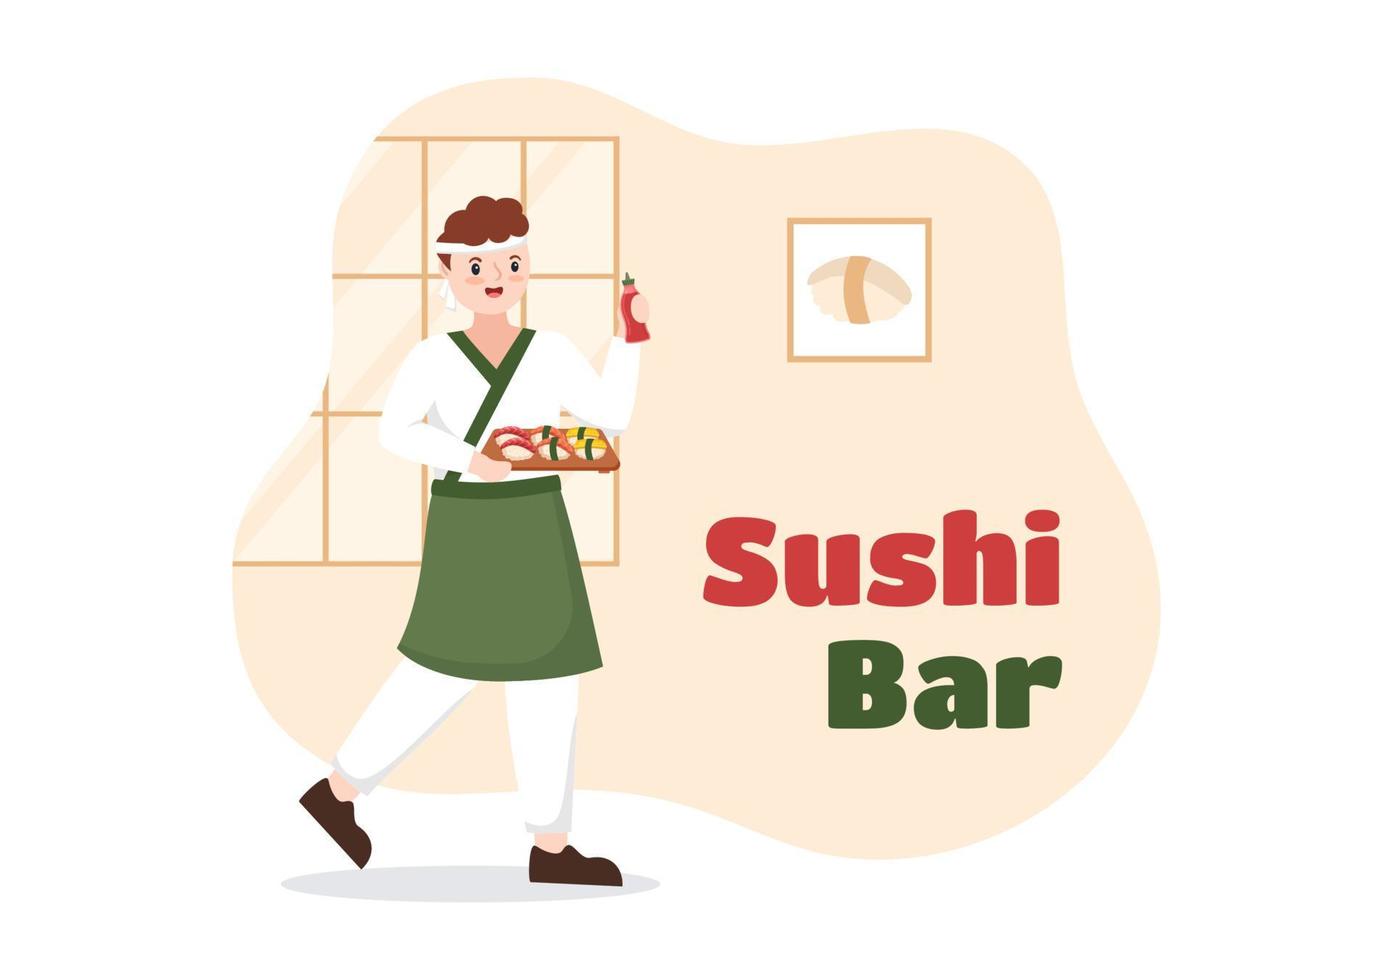 barra de sushi japón comida asiática o restaurante de sashimi y rollos para comer con salsa de soja y wasabi en plantilla ilustración plana de dibujos animados dibujados a mano vector